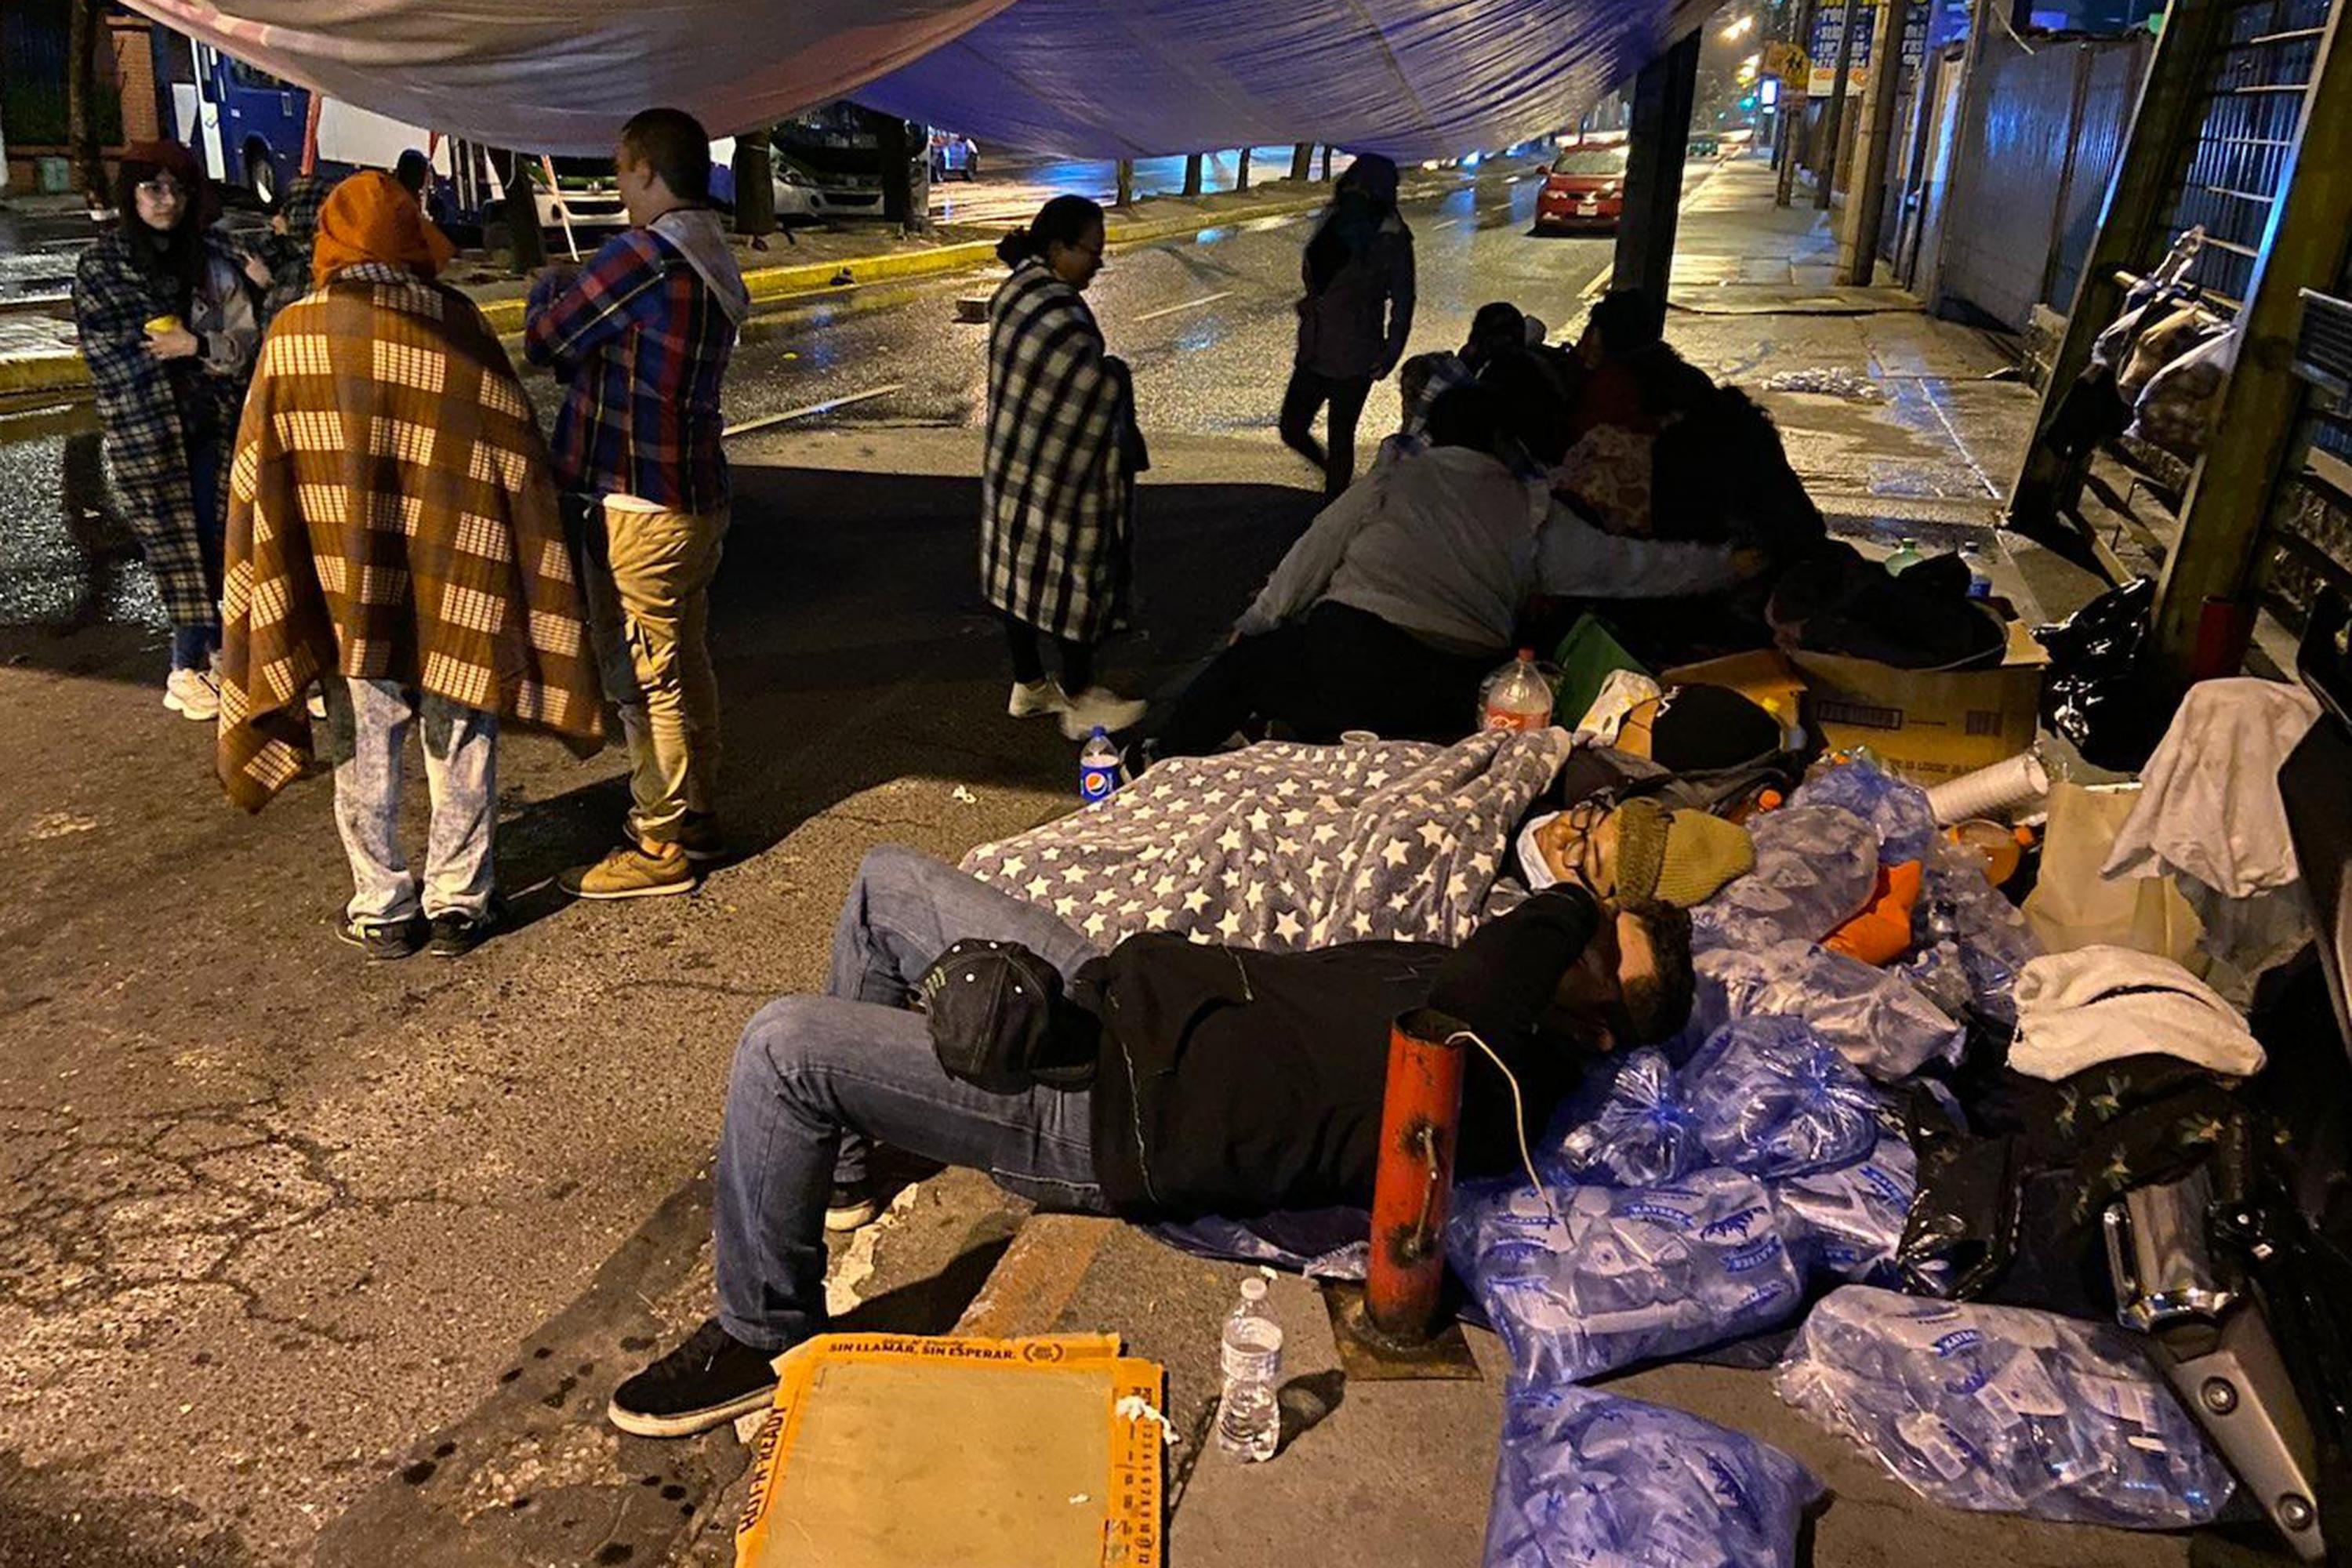 Manifestantes que cerraron la Avenida Petapa frente a la Universidad de San Carlos pasan la noche debajo de una carpa durante el paro nacional que ha paralizado Guatemala desde el lunes 2 de octubre. Foto de El Faro: Roman Gressier